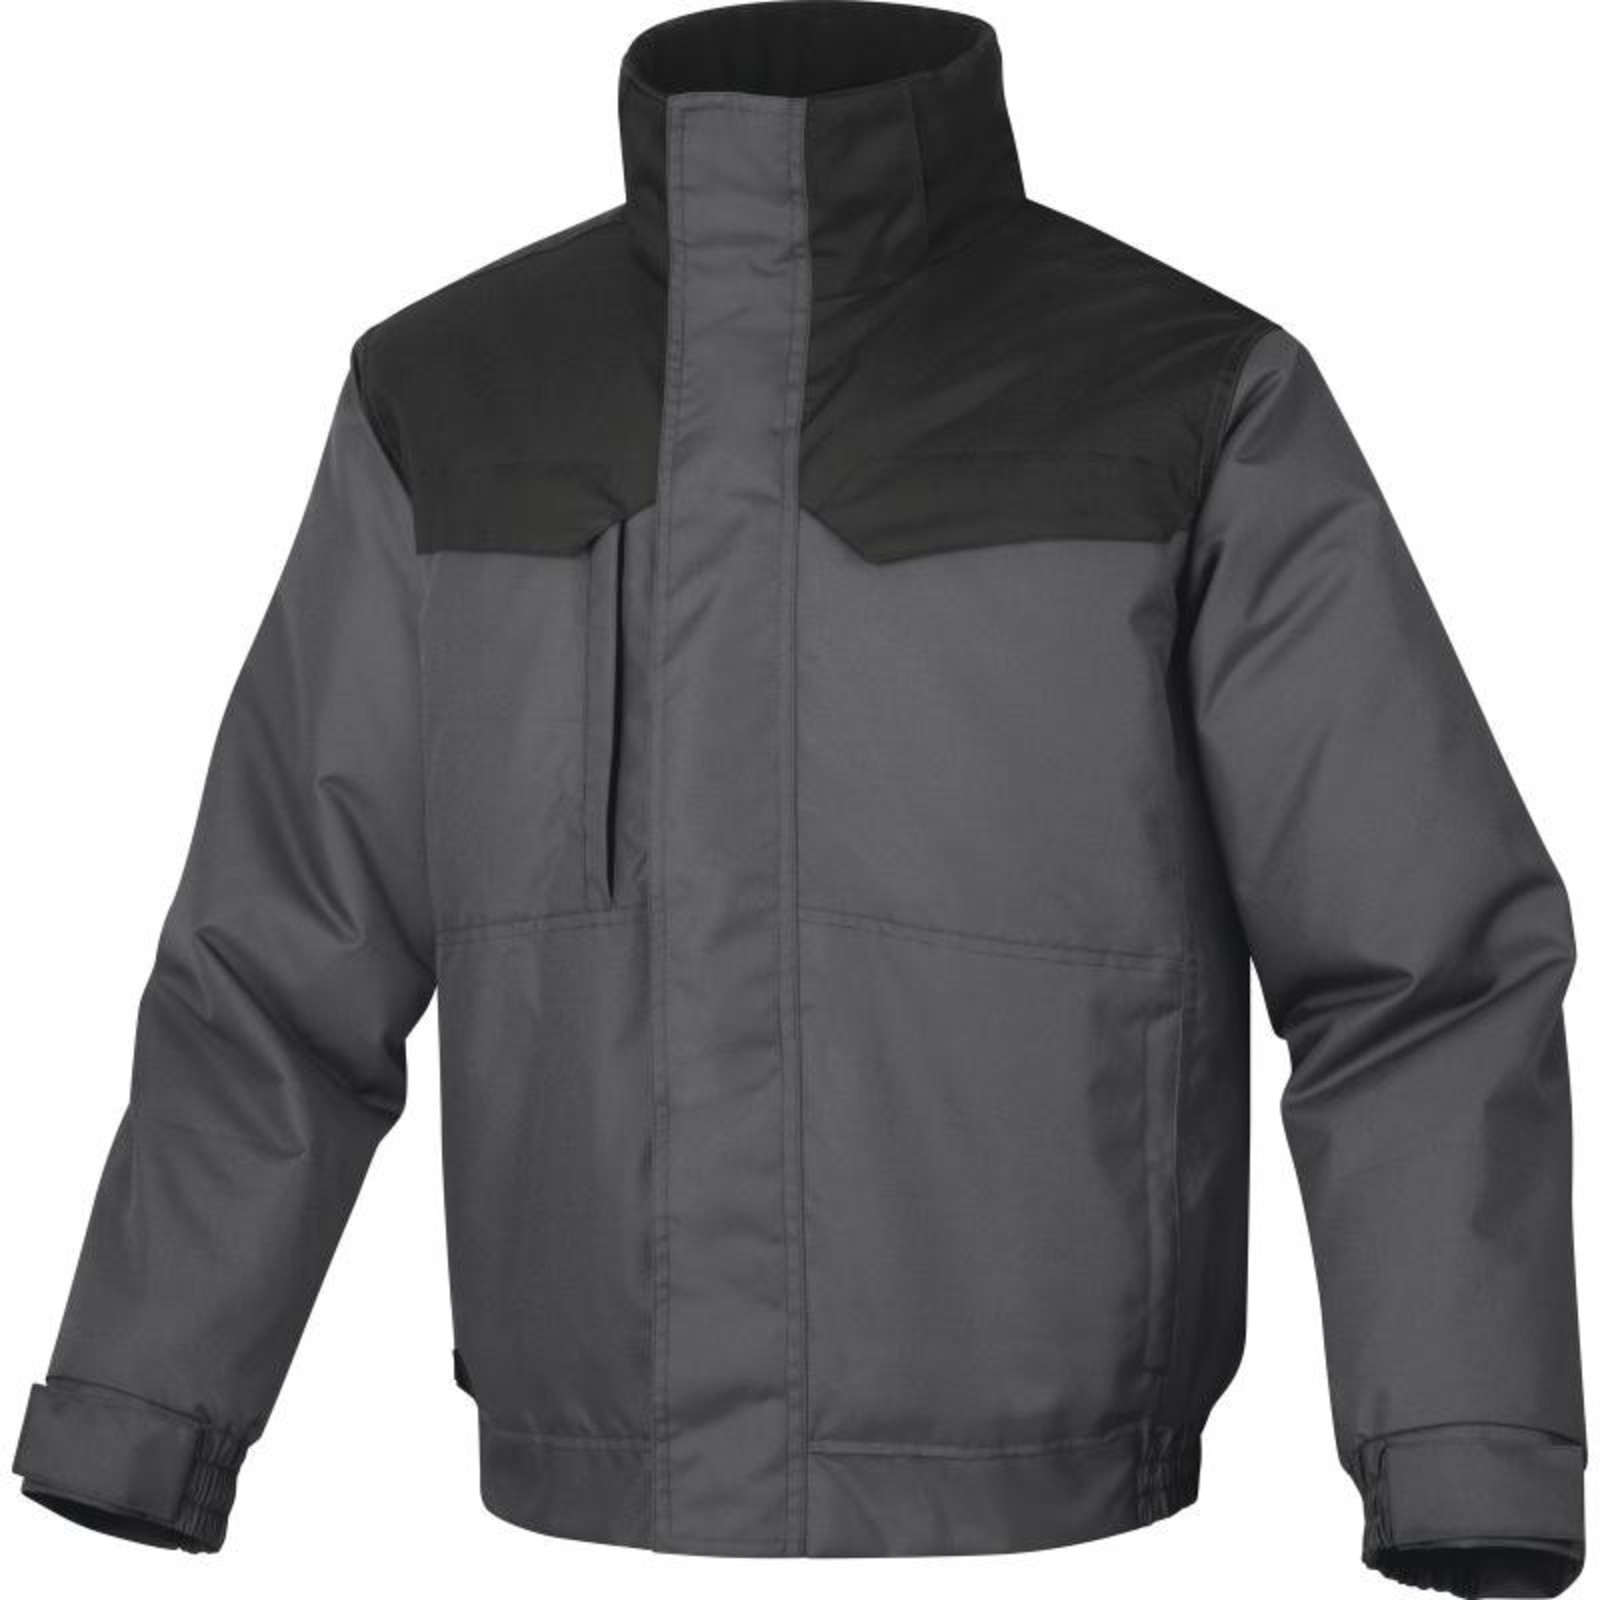 Zimná pánska bunda Delta Plus Northwood3 - veľkosť: M, farba: sivá/čierna